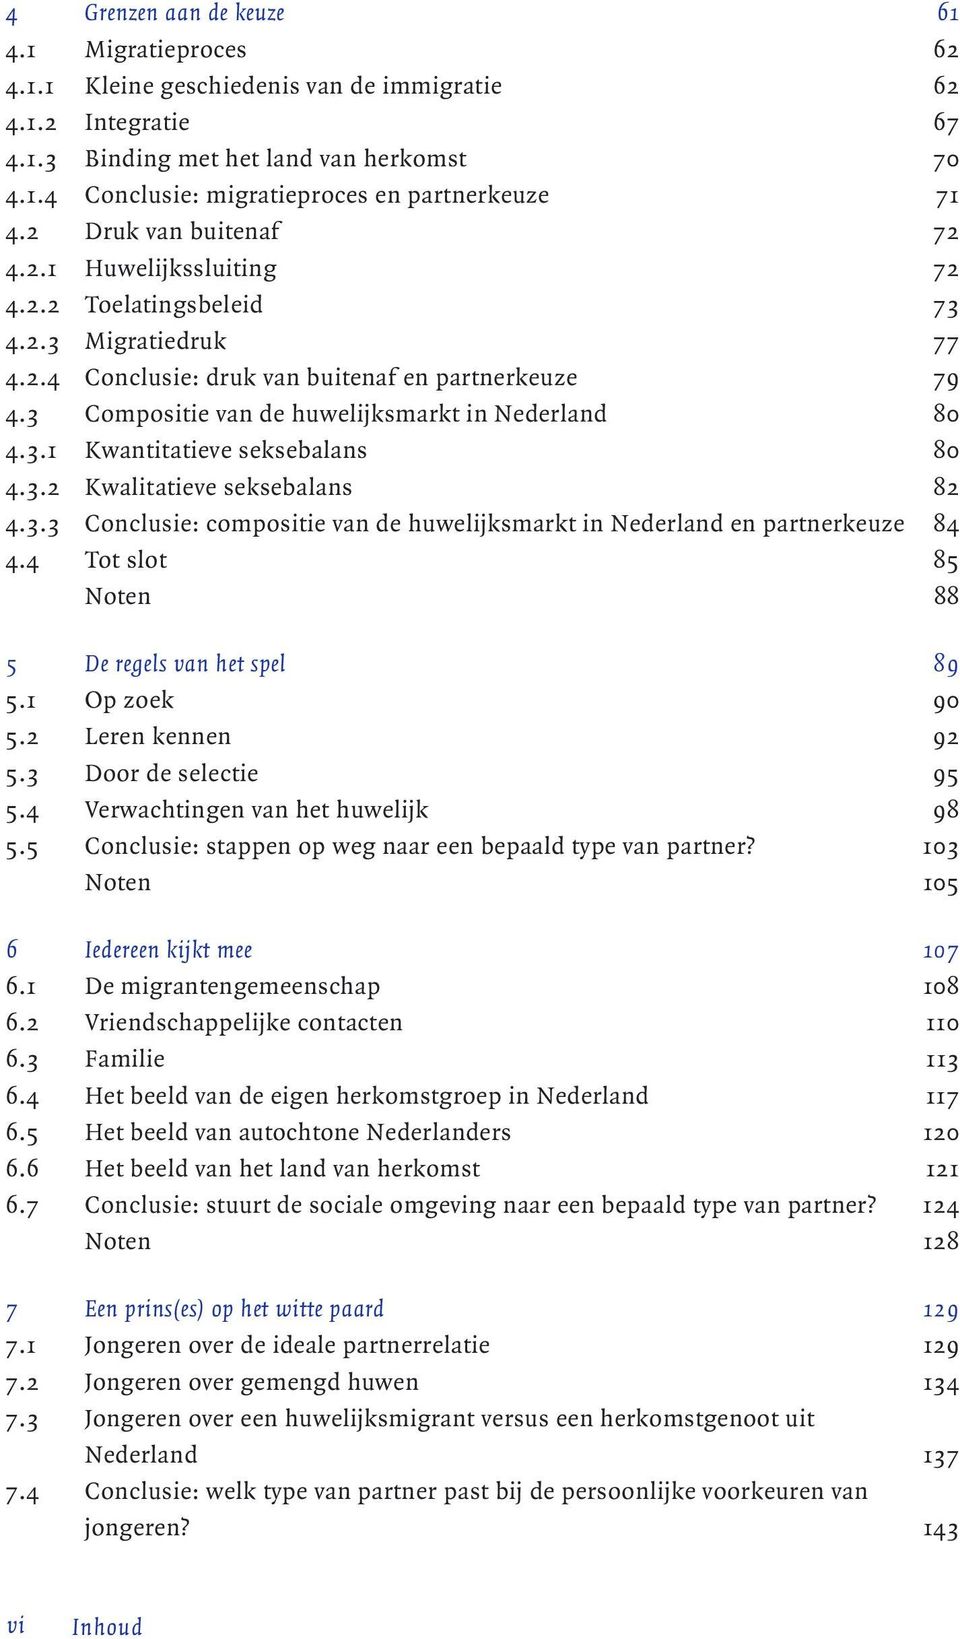 3 Compositie van de huwelijksmarkt in Nederland 80 4.3.1 Kwantitatieve seksebalans 80 4.3.2 Kwalitatieve seksebalans 82 4.3.3 Conclusie: compositie van de huwelijksmarkt in Nederland en partnerkeuze 84 4.